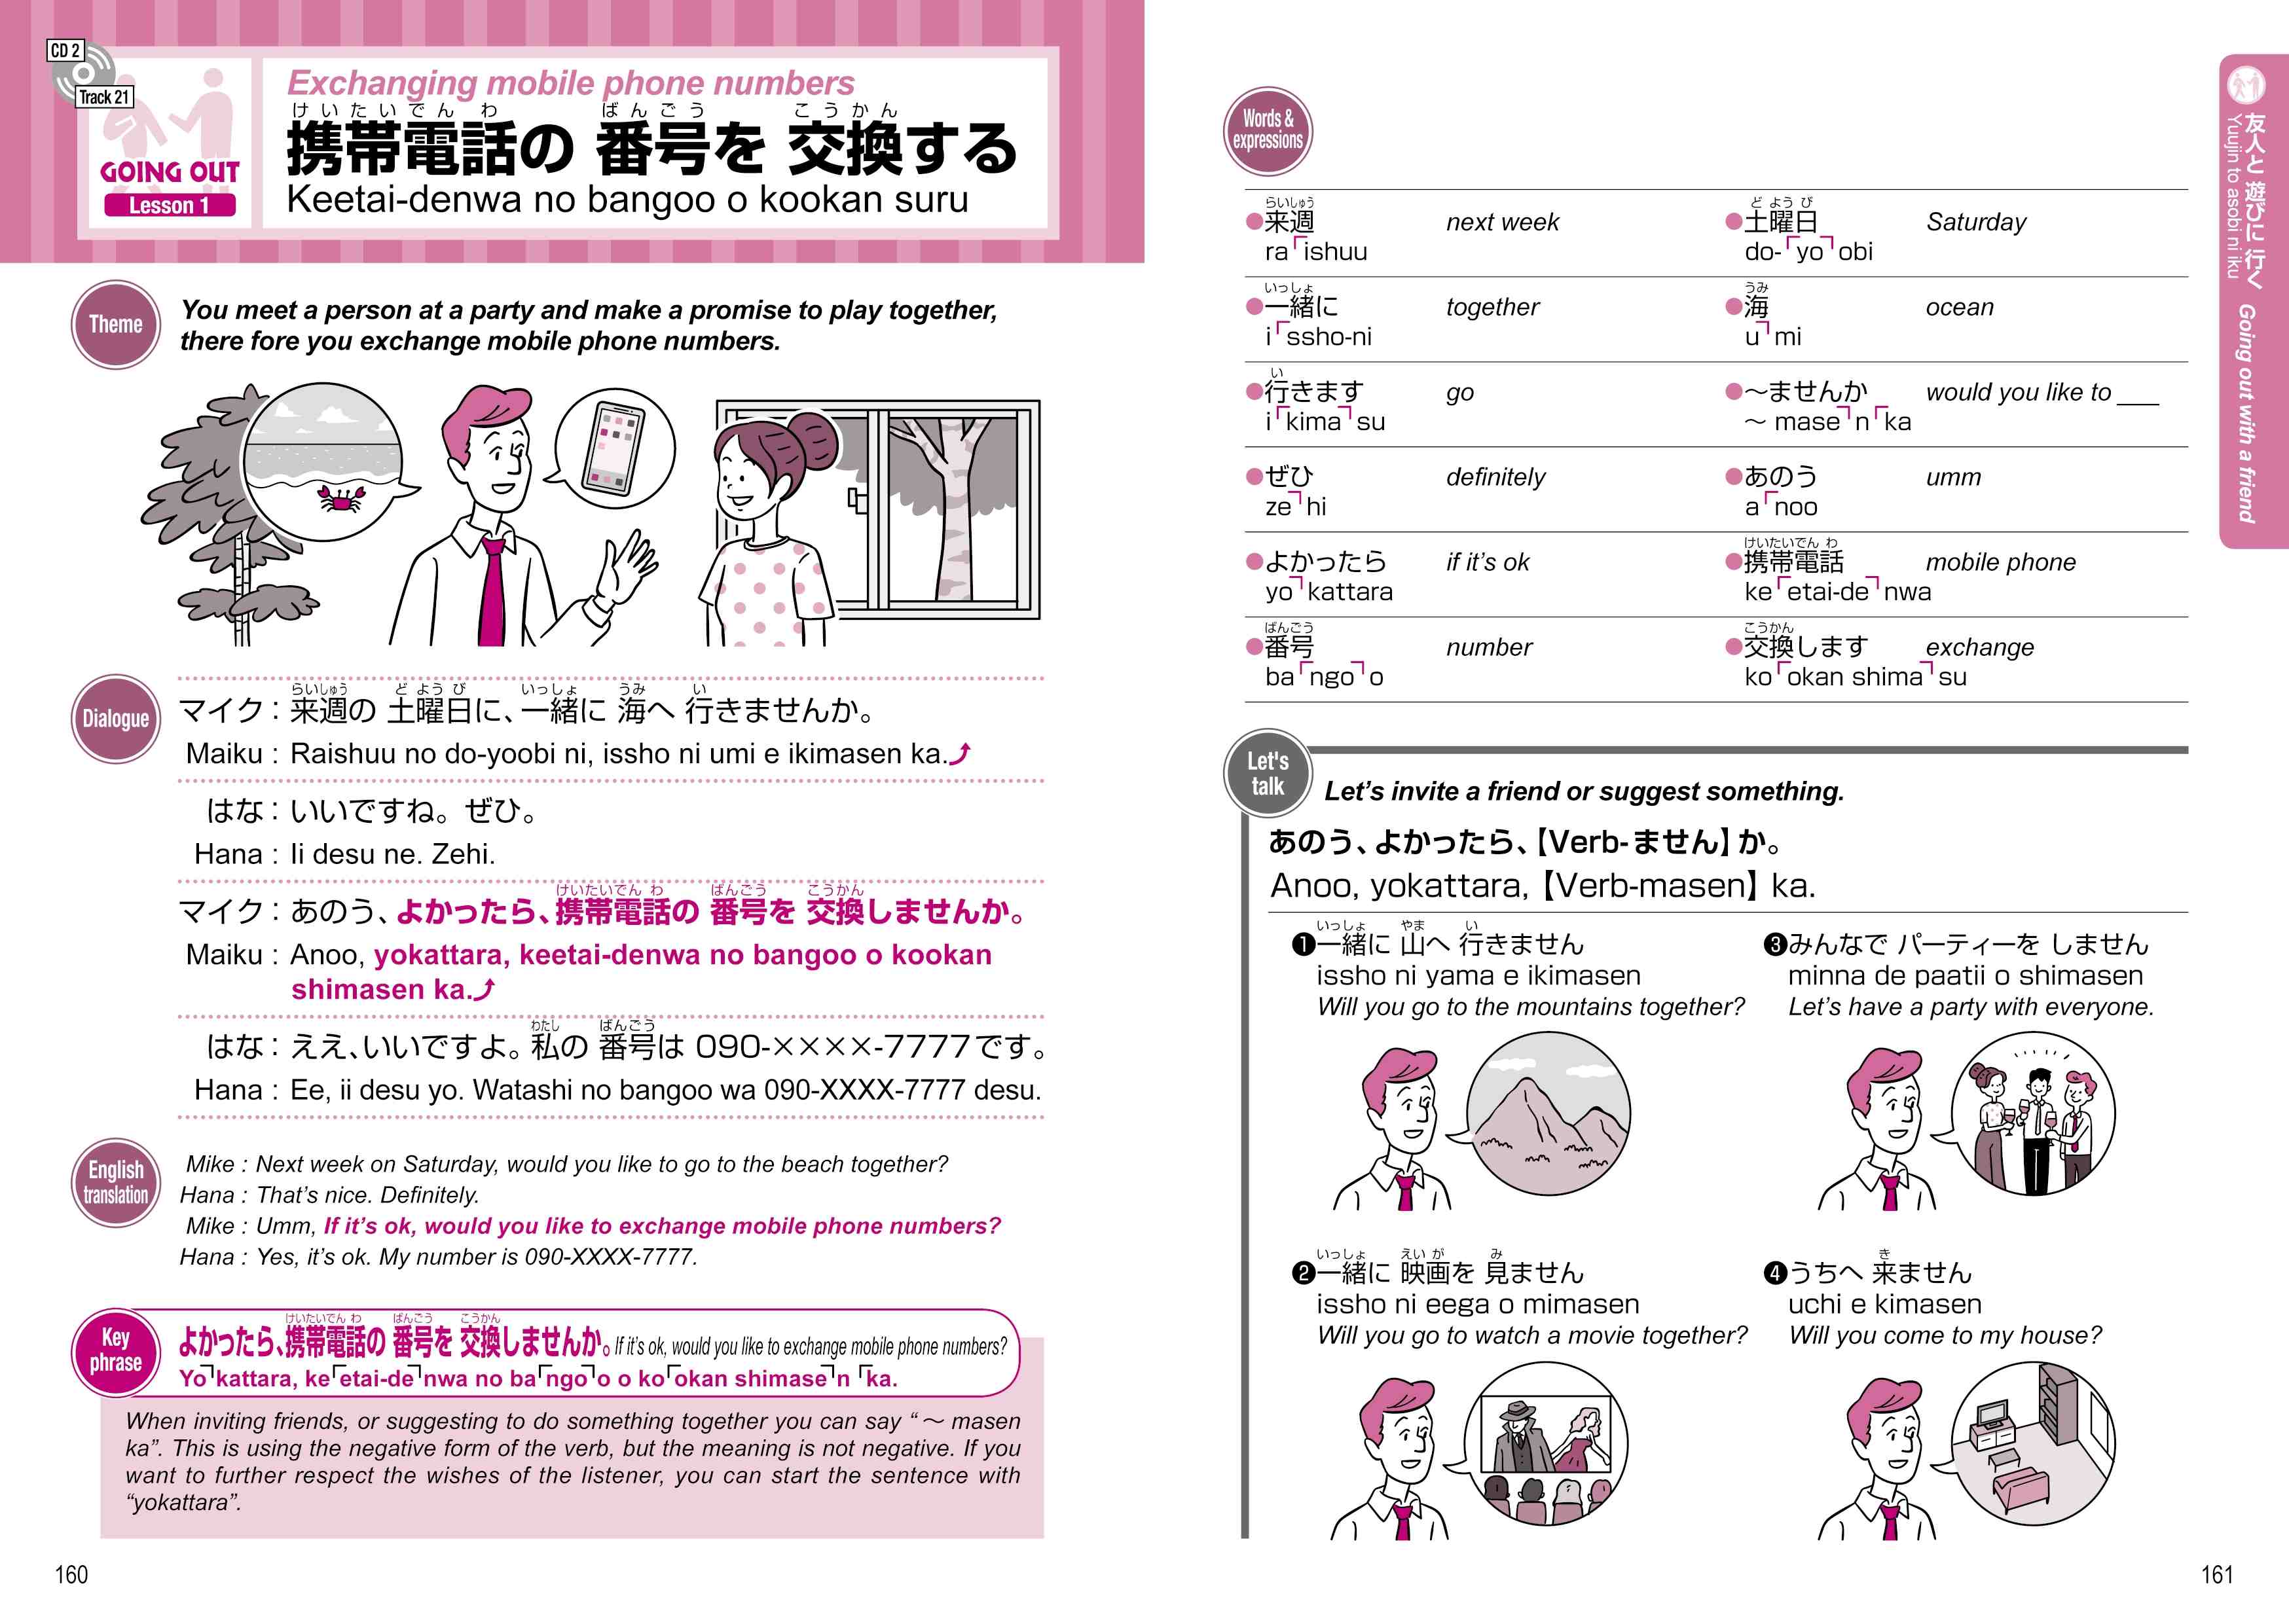 外国人のための英語でわかる日本語日常会話 Understanding Japanese Daily Conversations In English For Foreigners ナツメ社